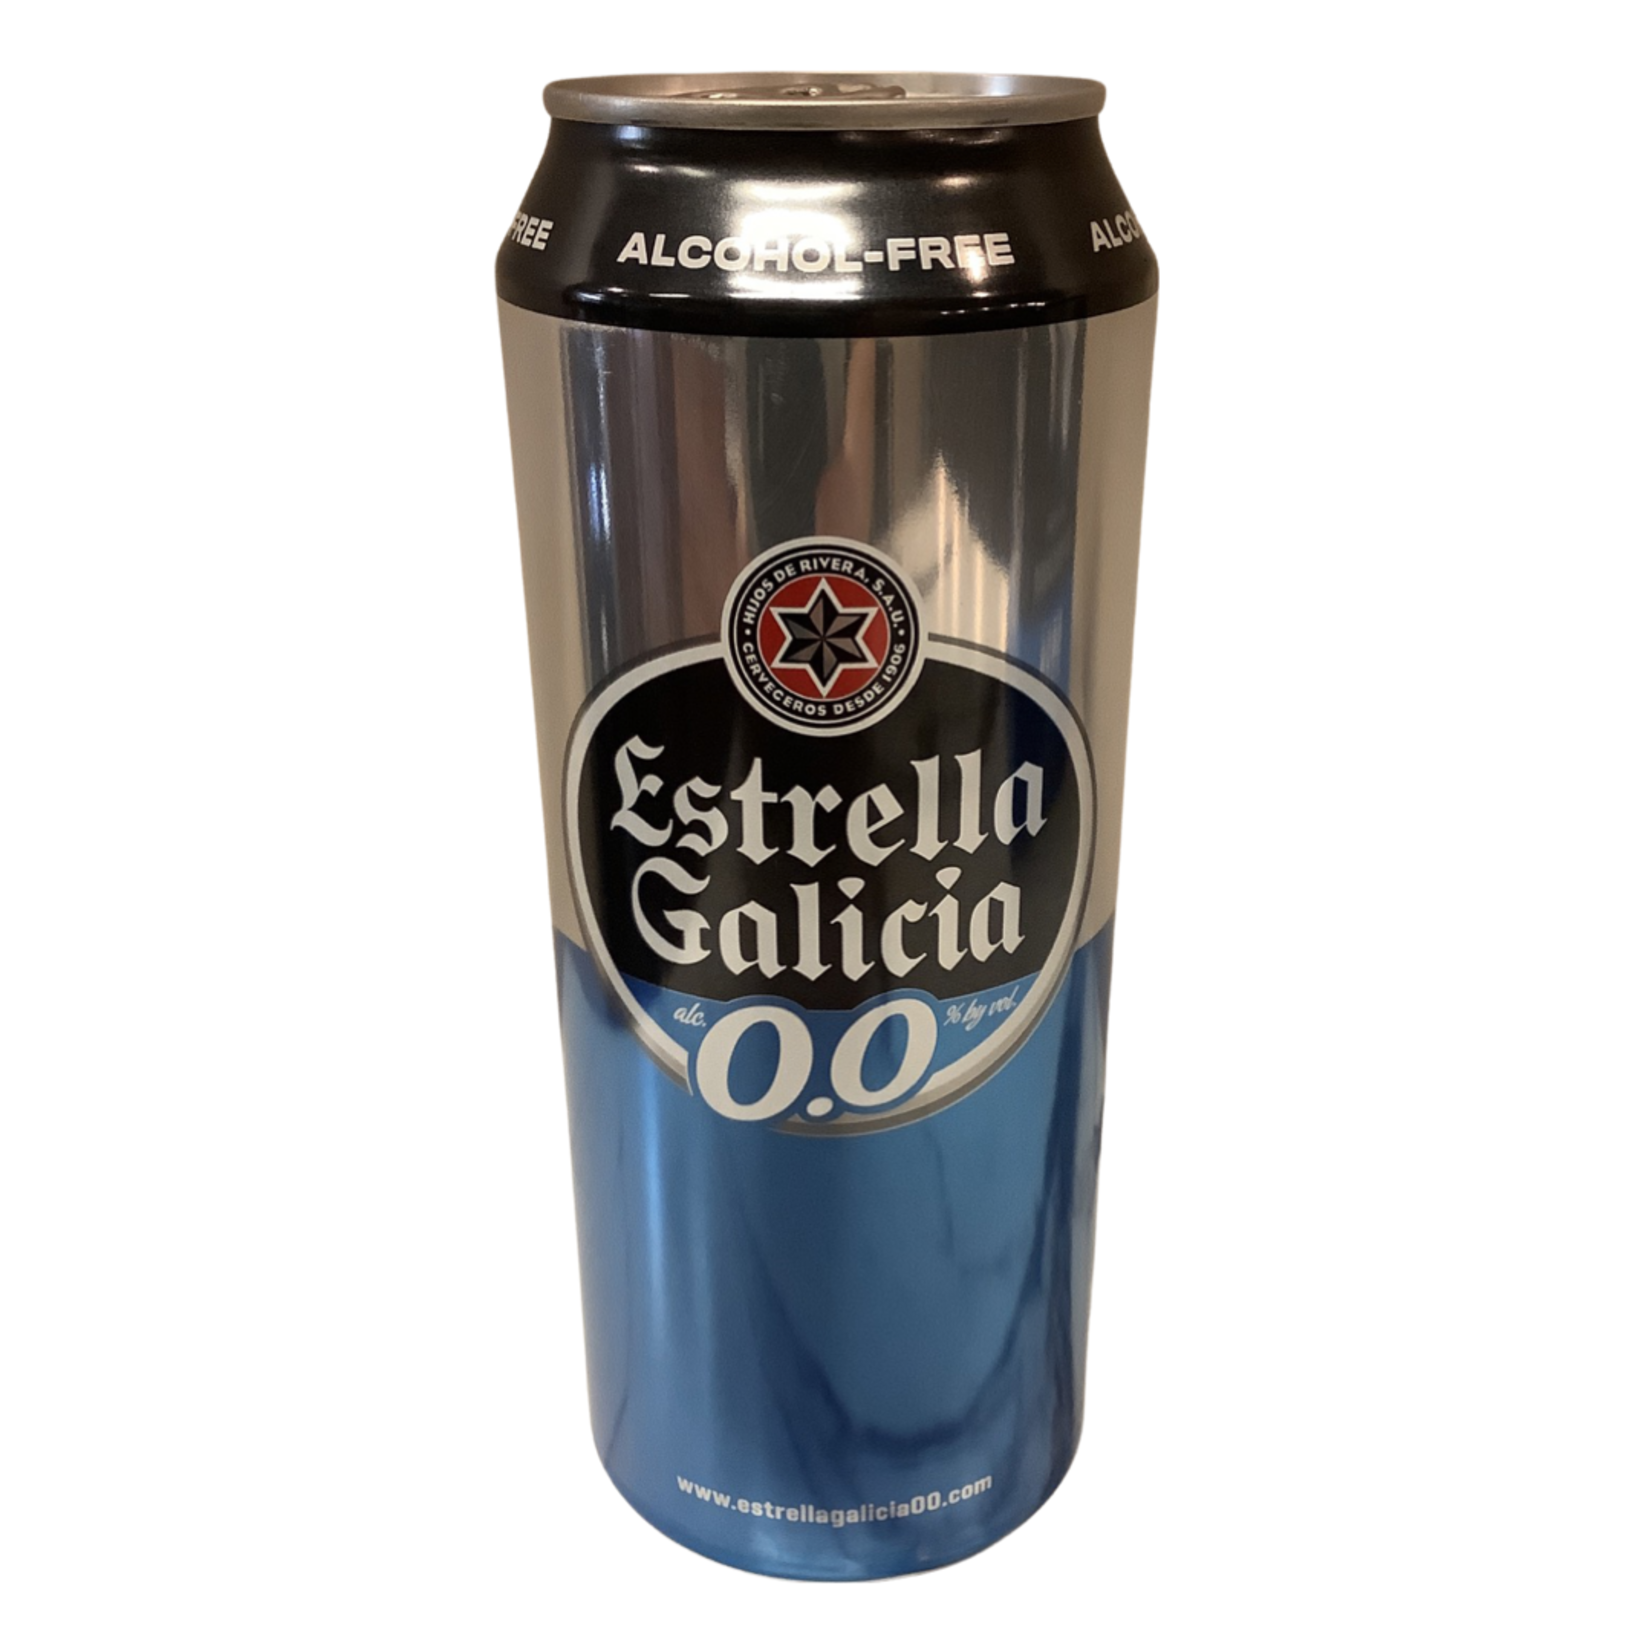 Estrella Galicia 0.0 Alcohol-Free Beer (16 OZ), Spain